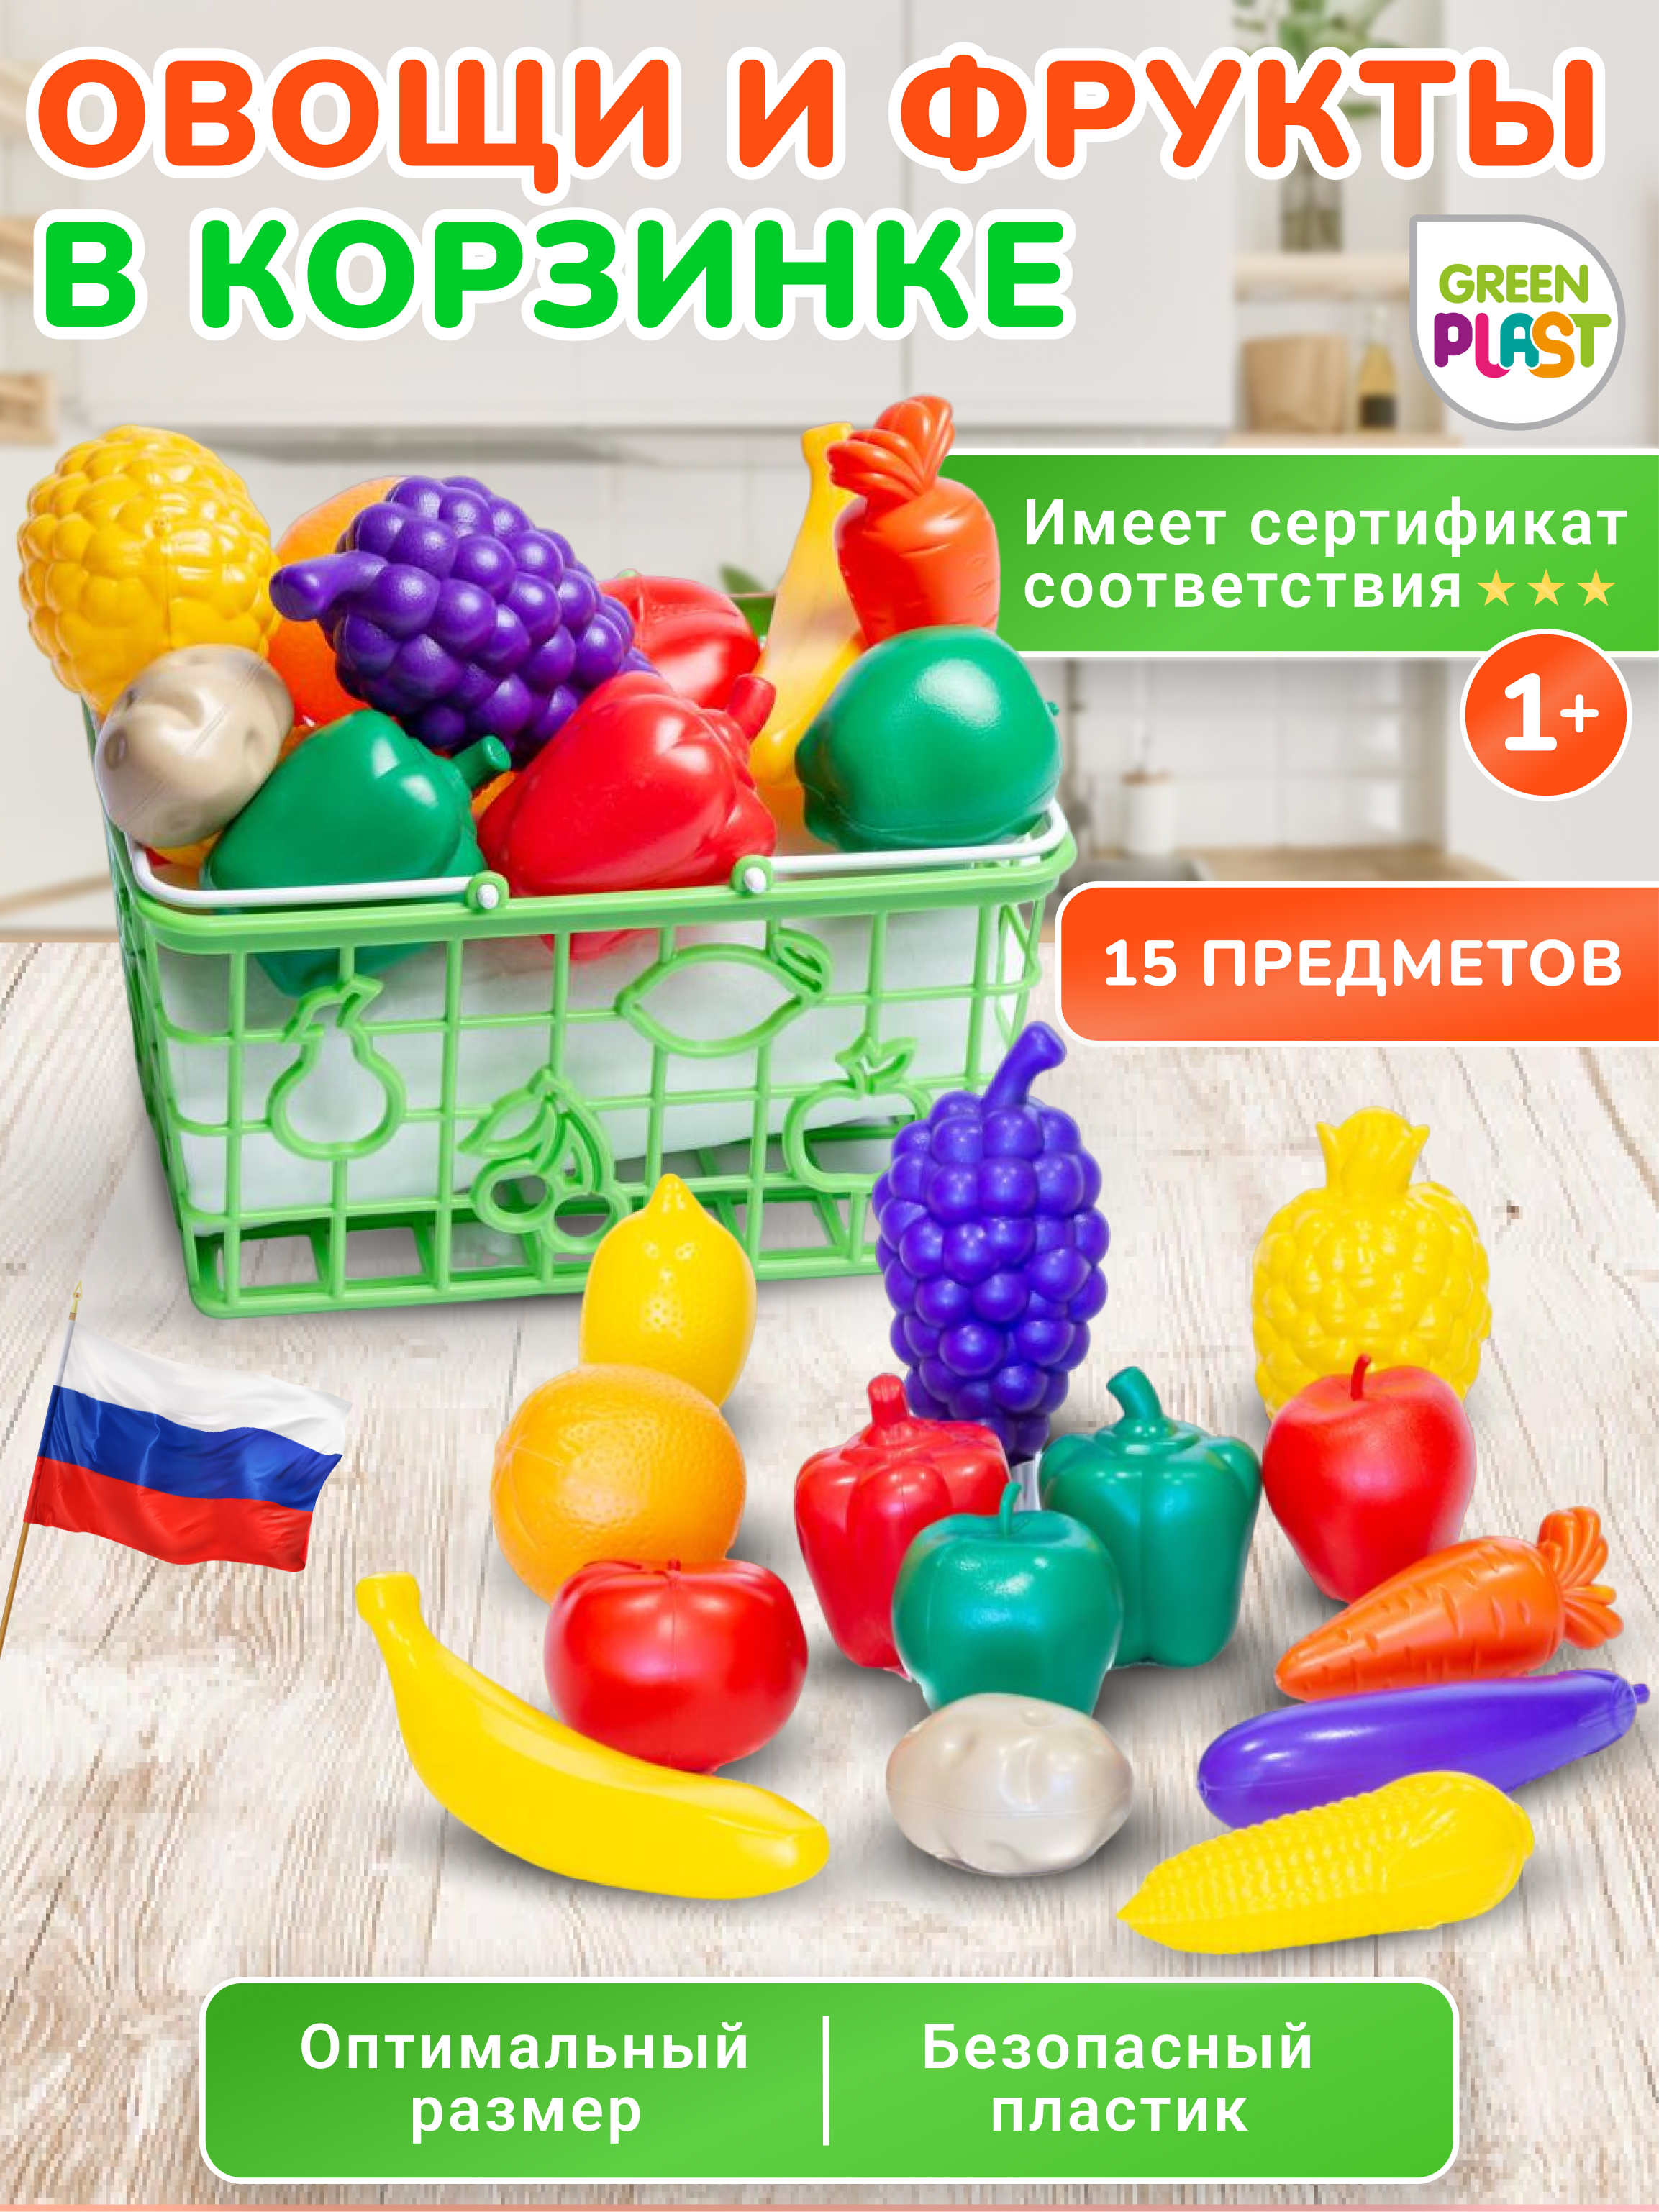 Набор игрушечных продуктов Green Plast овощи и фрукты в корзинке - фото 2